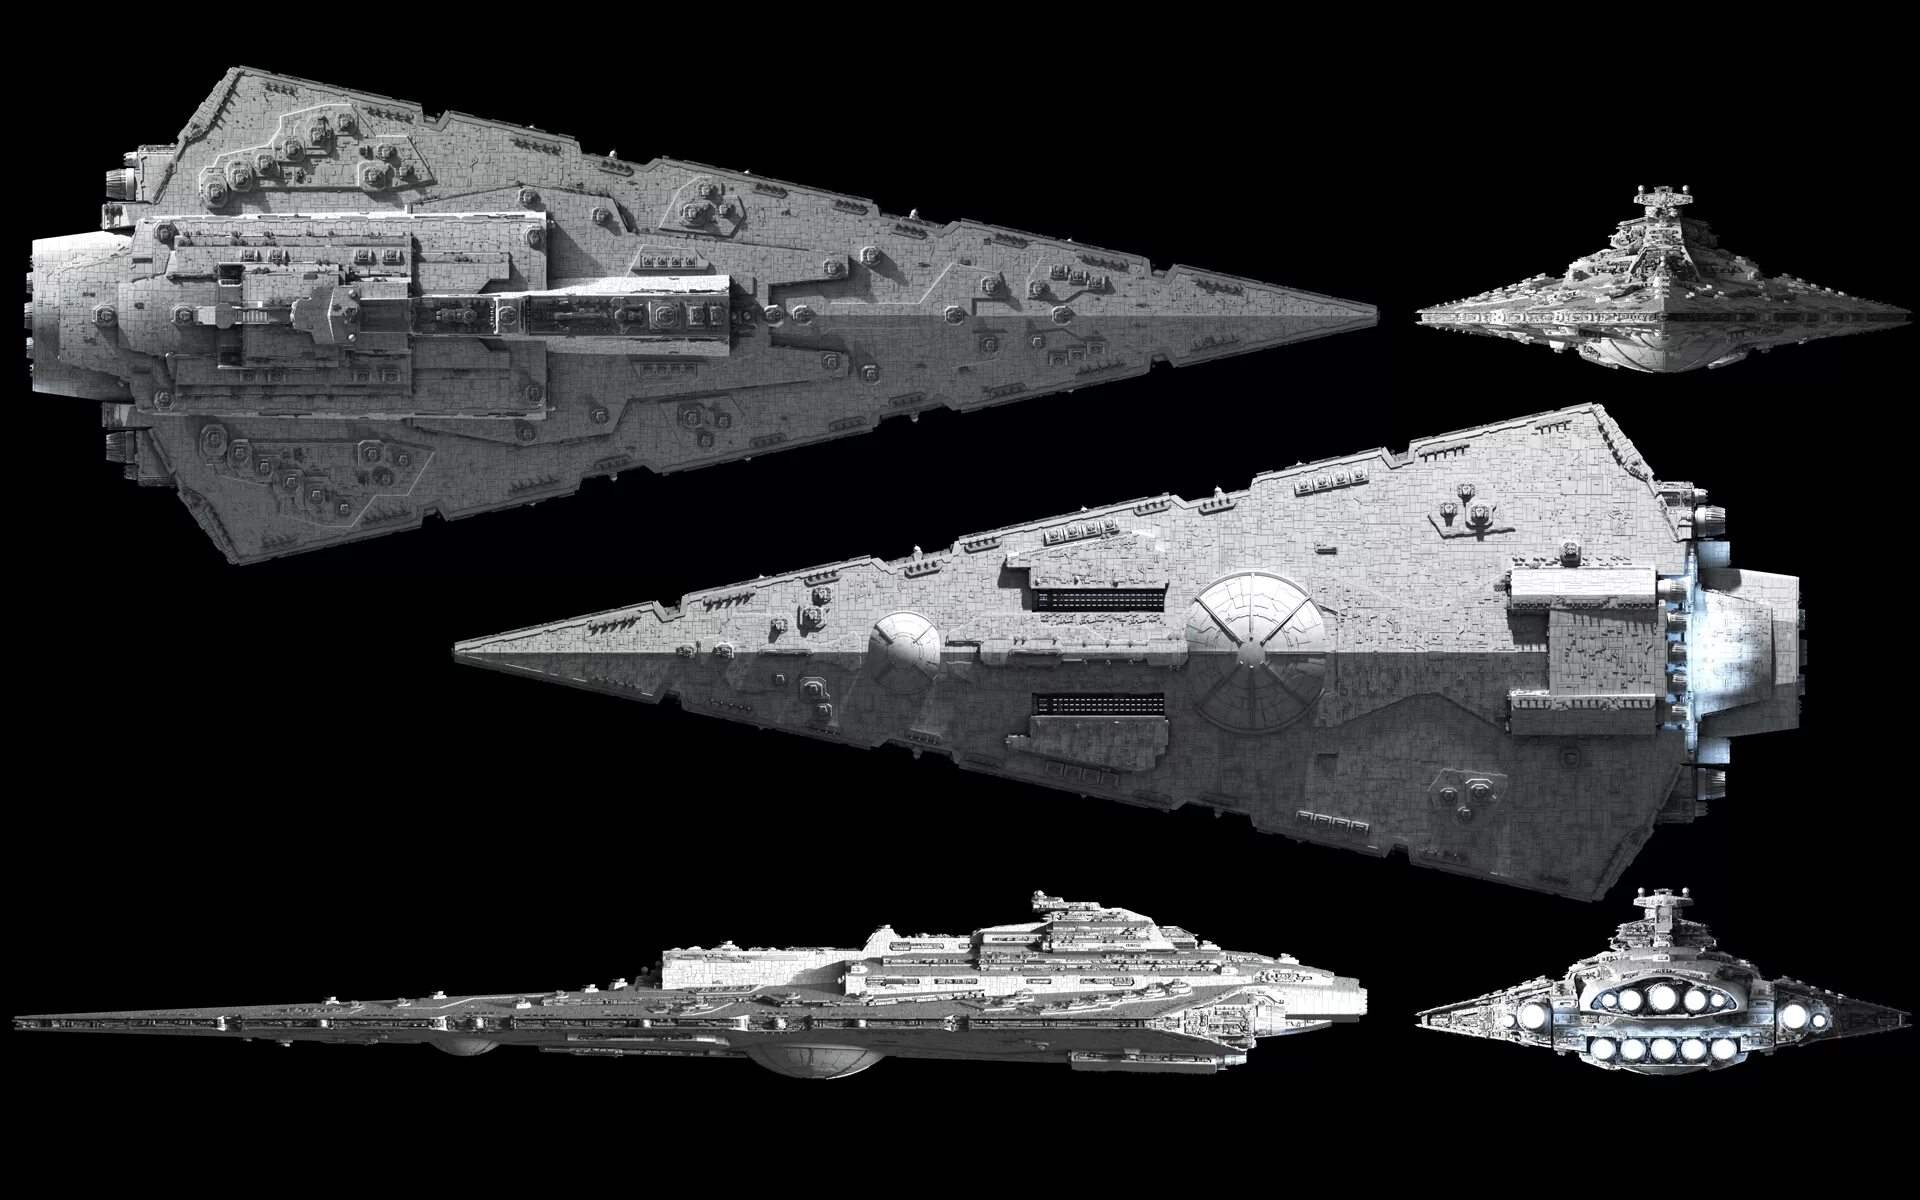 3 стар проект. Телос корабль Звездные войны. Звёздный разрушитель типа Имперский 2. Star Wars Звездный разрушитель. Имперский Звездный разрушитель.